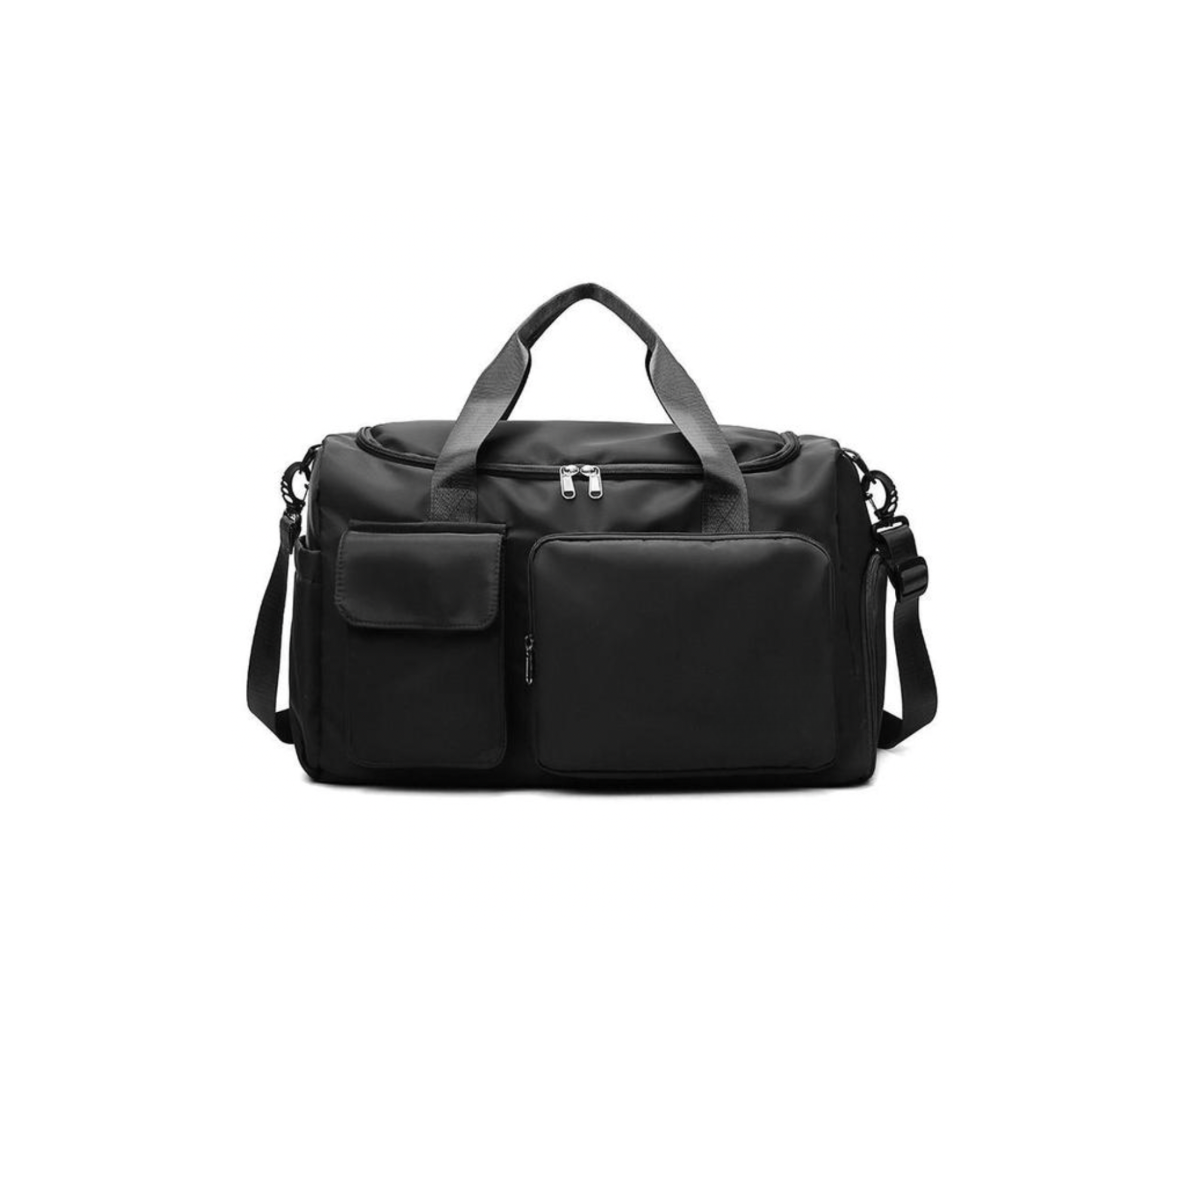 Waterproof Duffel Bag with Multiple Pockets & Handles | Buy Online in ...